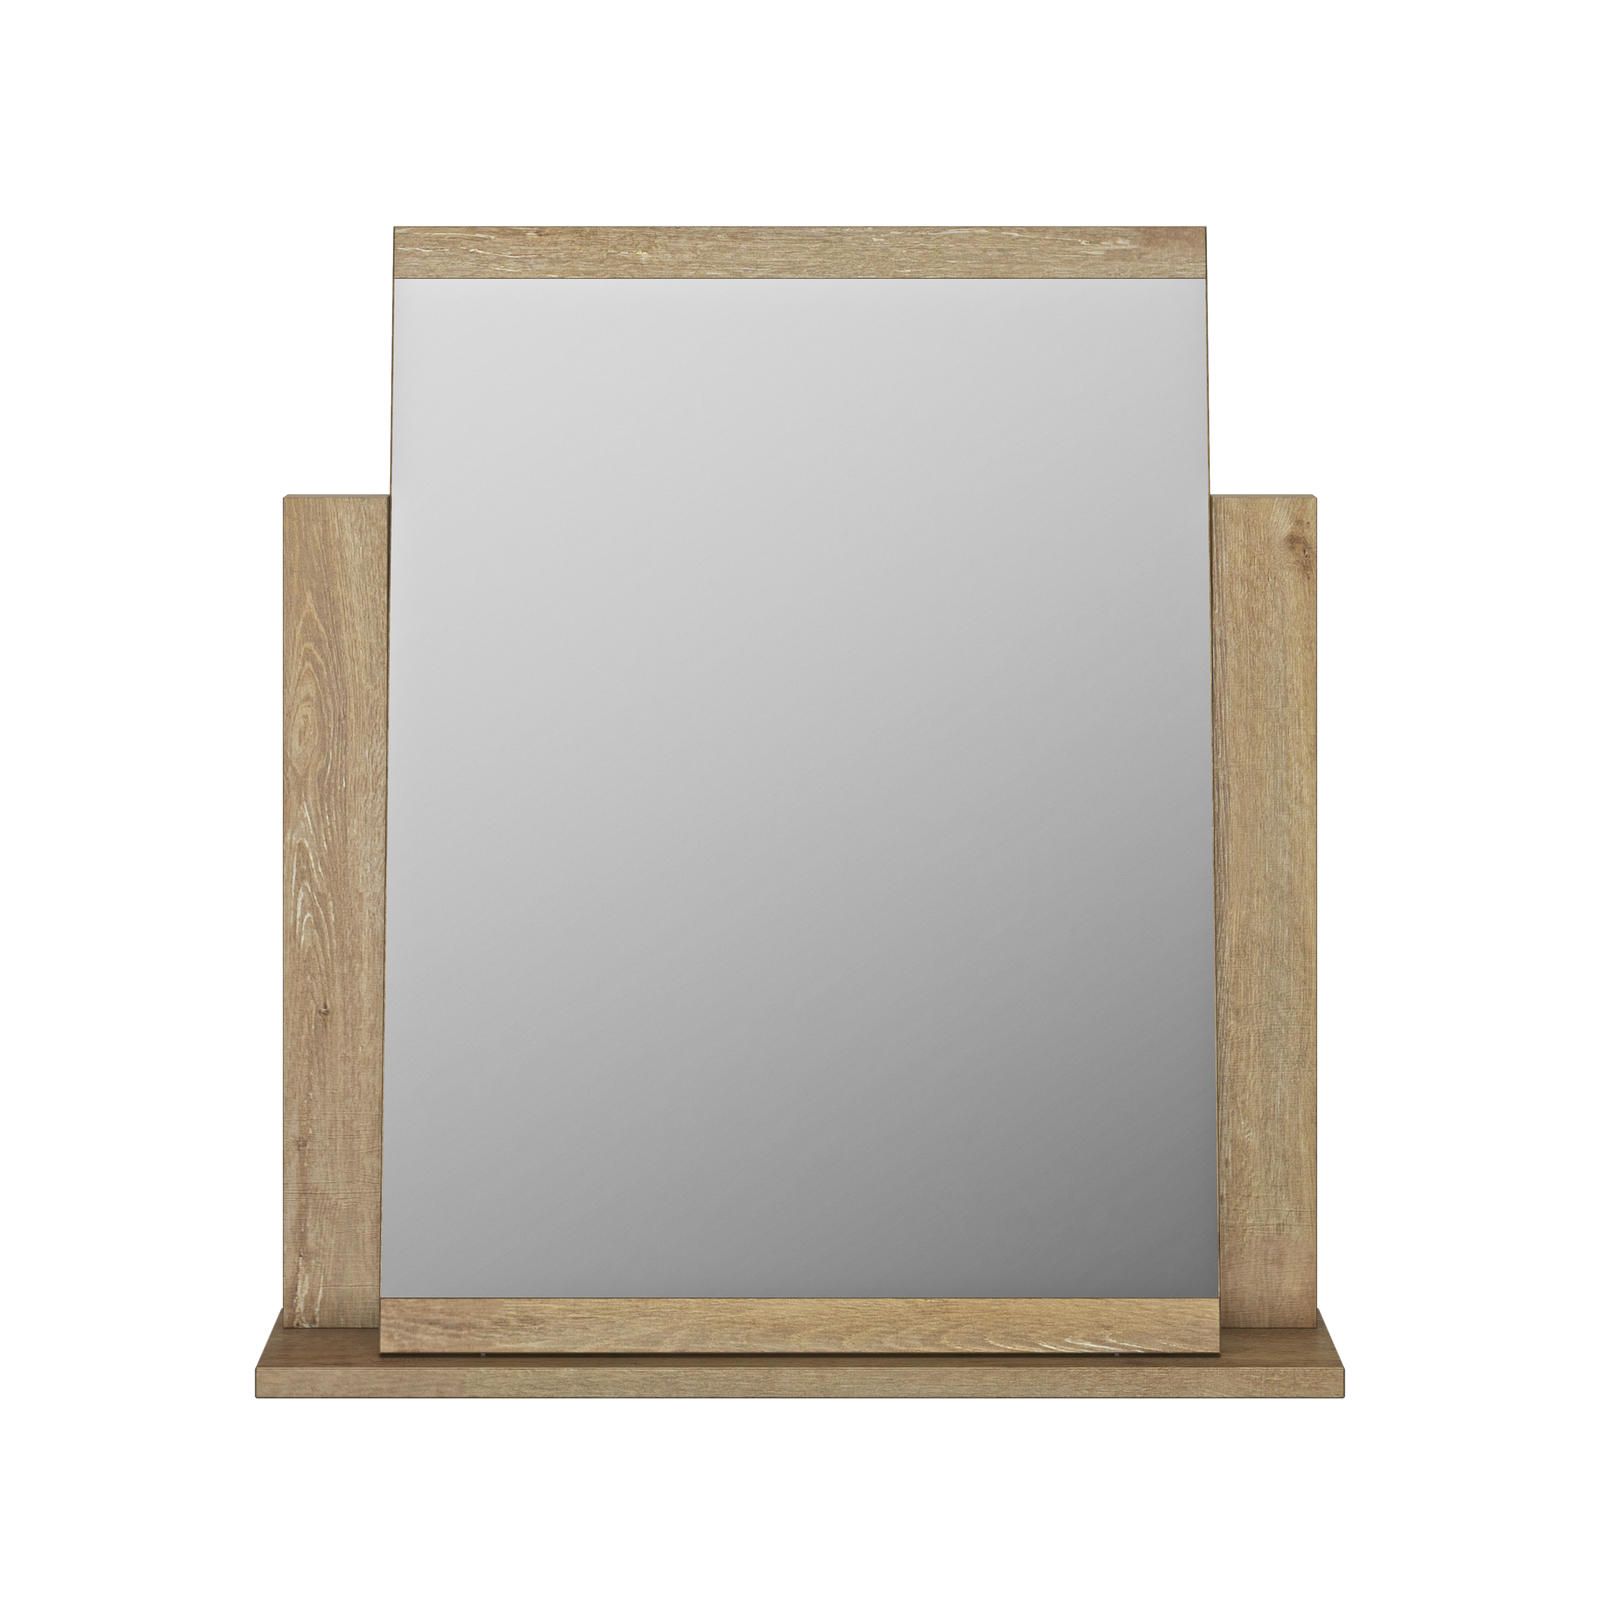 Aldo Stylové zrcadlo s umístěním na komodu Thelma light oak - Nábytek ALDO